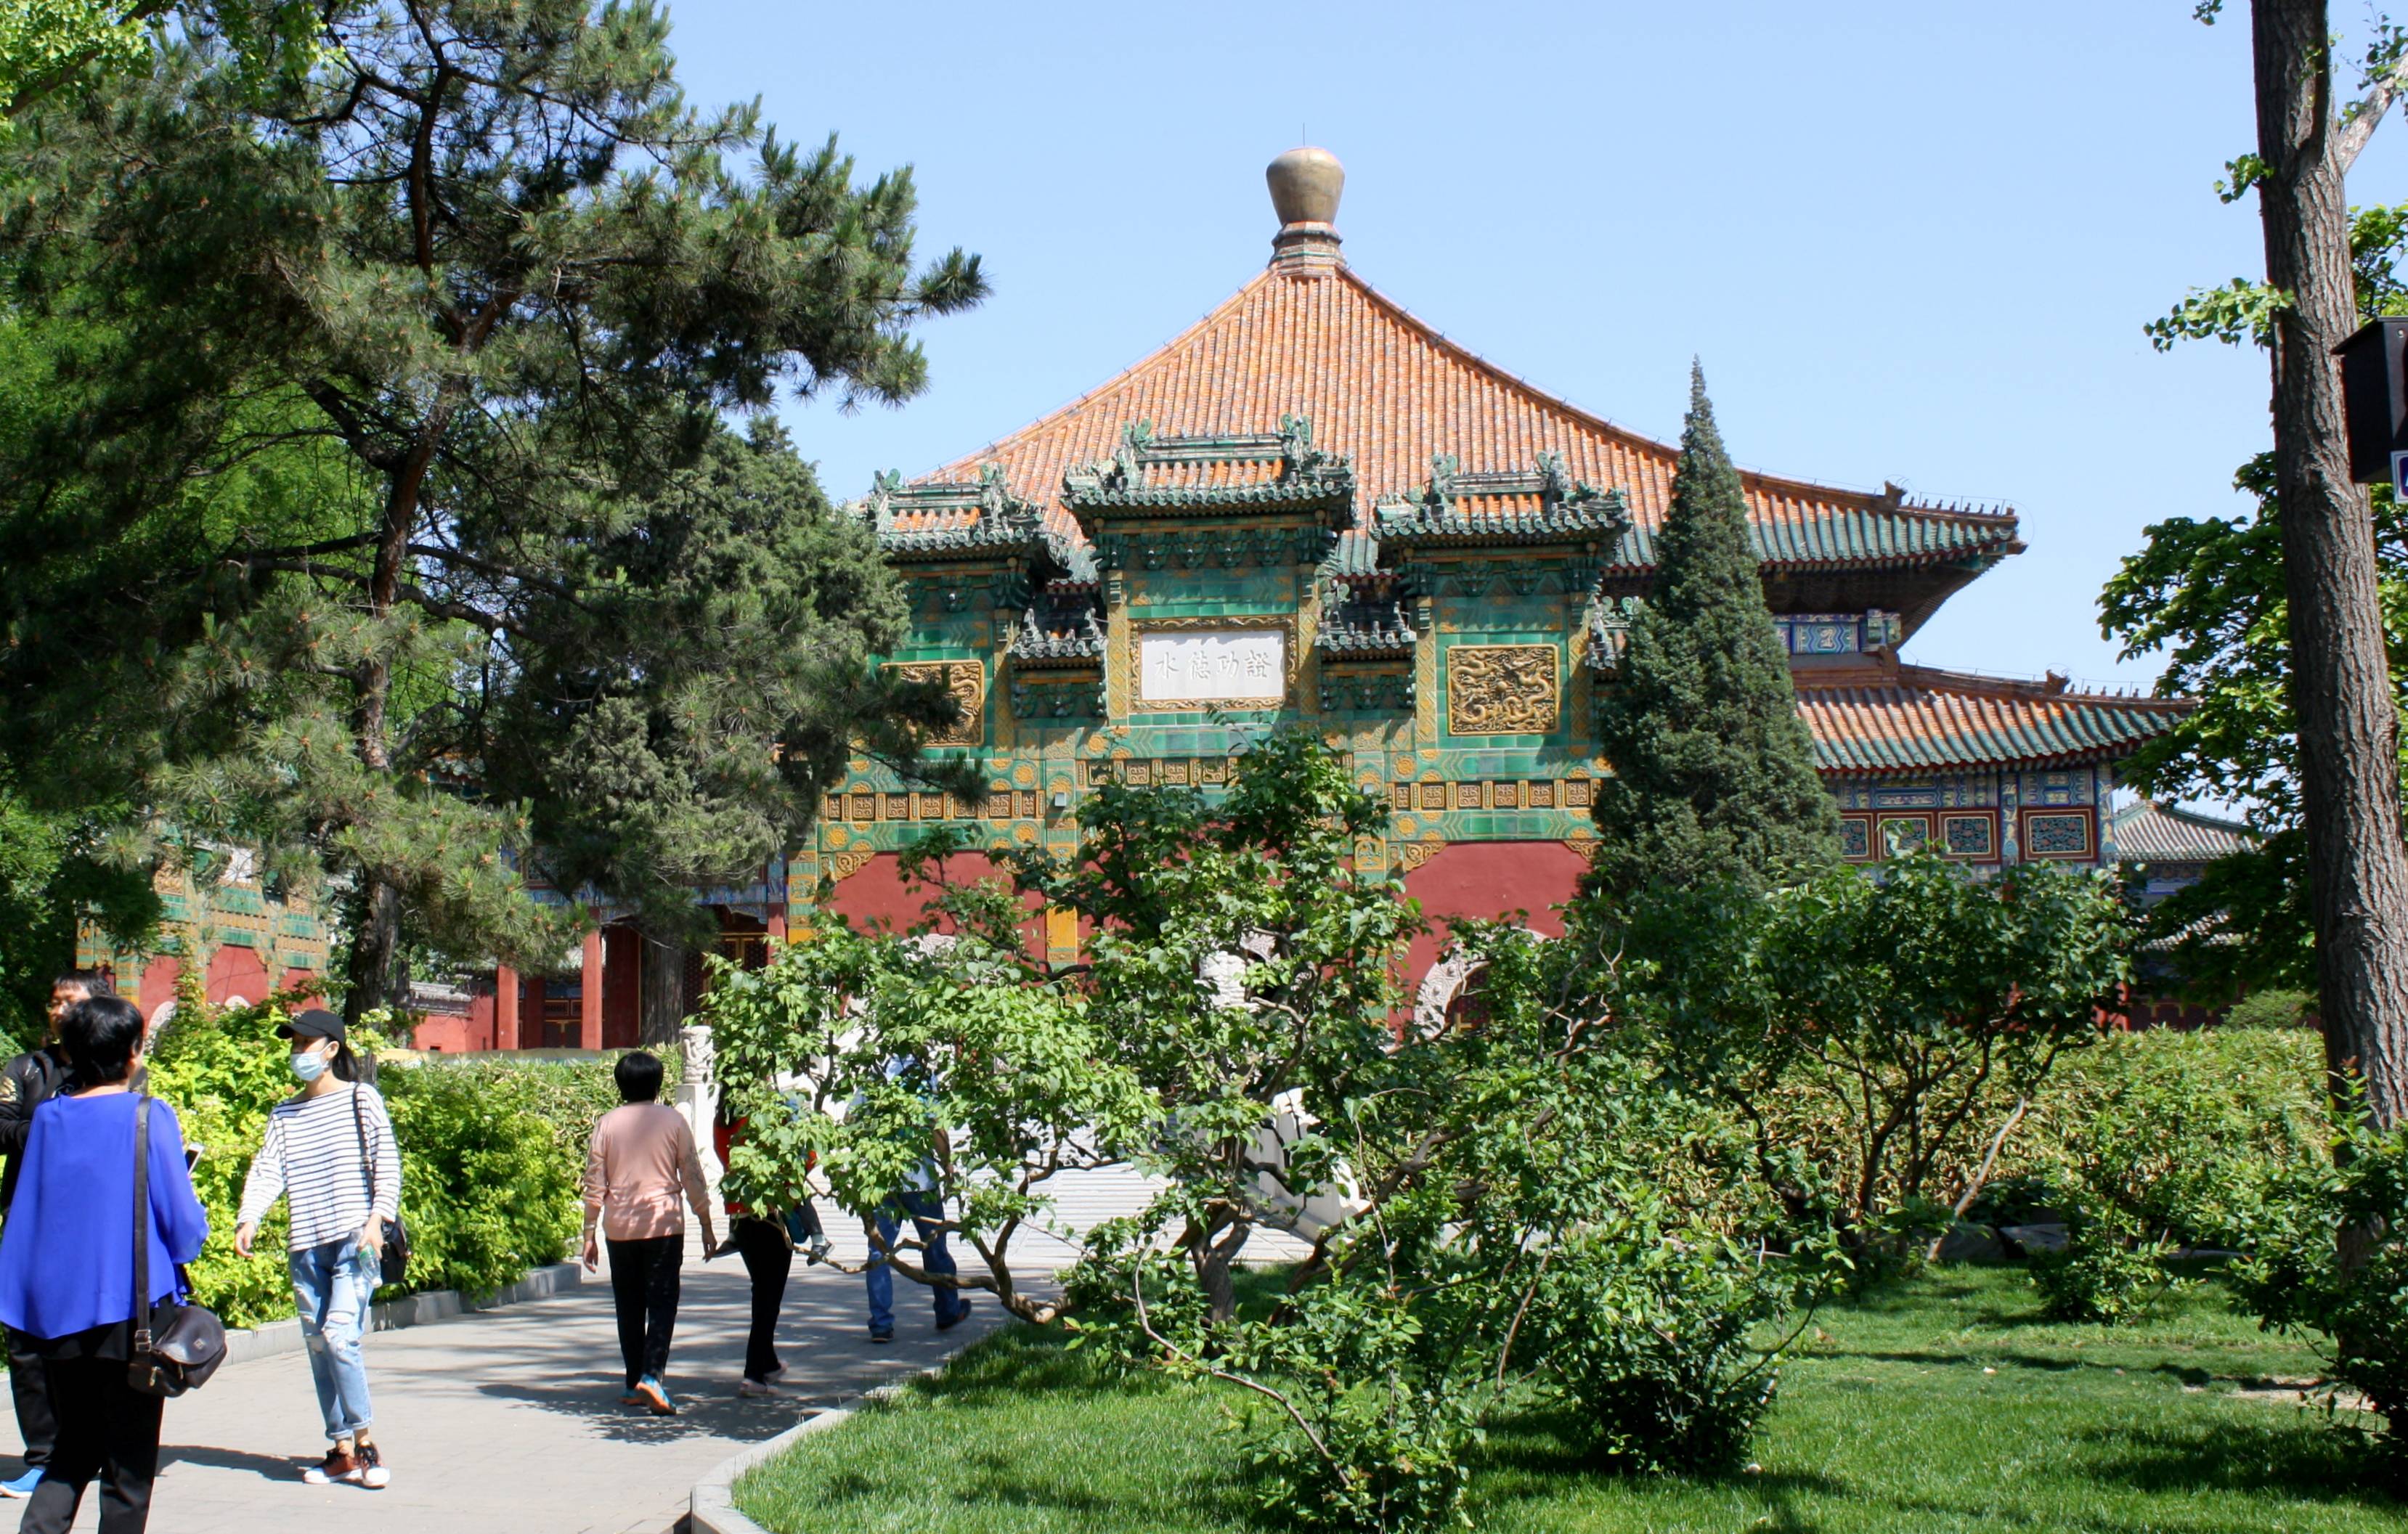 Запретный город (императорский дворец гугун), пекин. фото, видео, как добраться, отзывы, цены, время работы, факты, отели рядом на туристер.ру